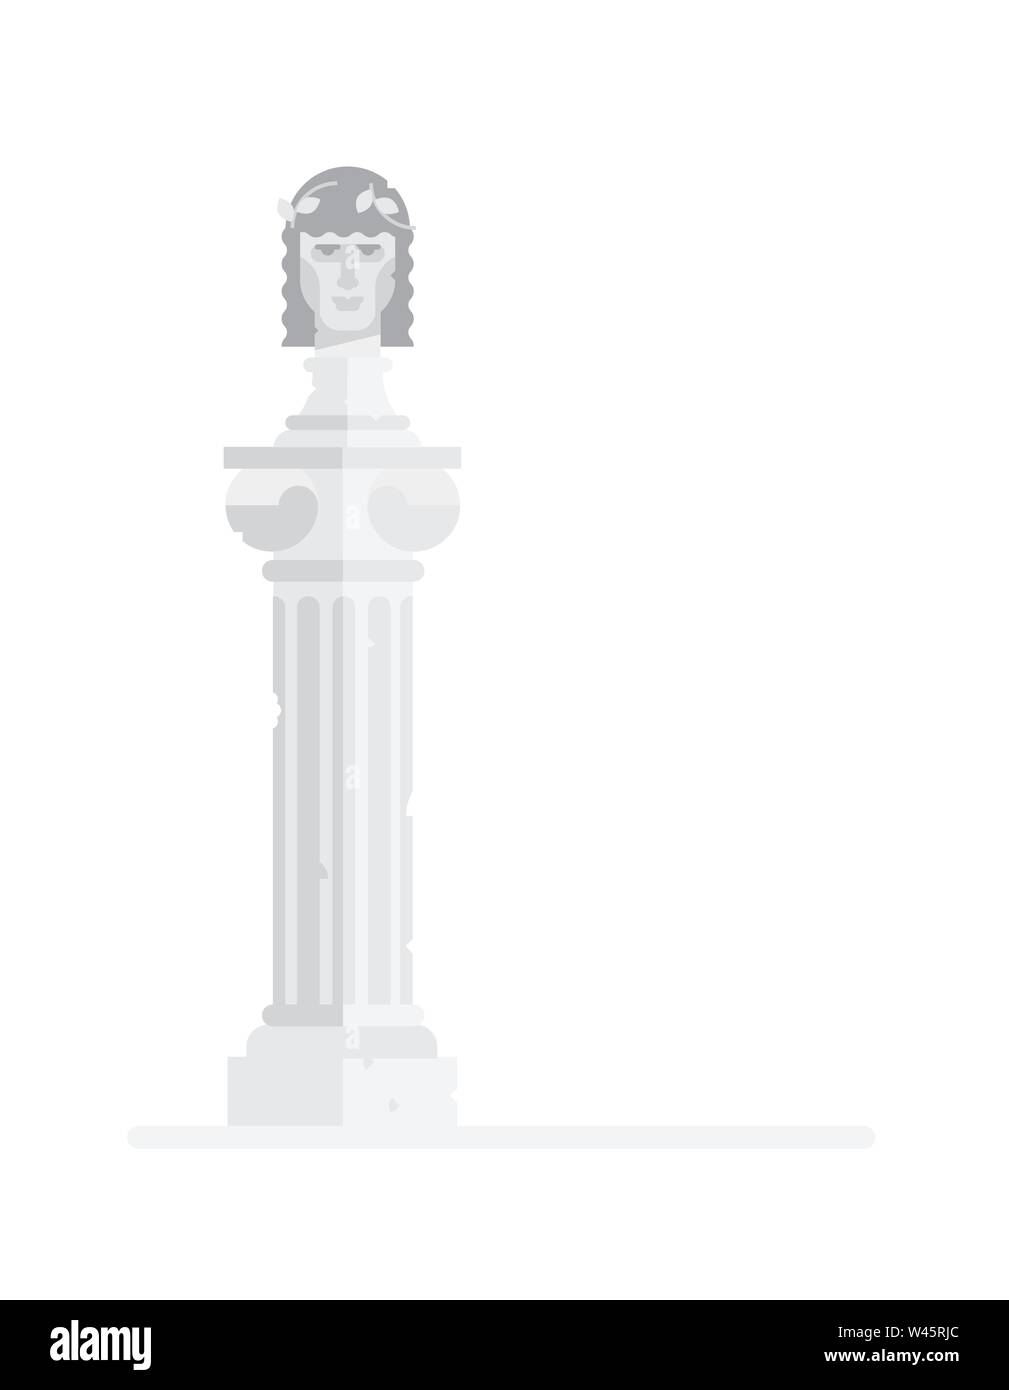 Busto scultoreo del dio greco. Illustrazione piana del re greco sulla colonna. Illustrazione Vettoriale. Icona di un imperatore romano è isolato su un whi Illustrazione Vettoriale